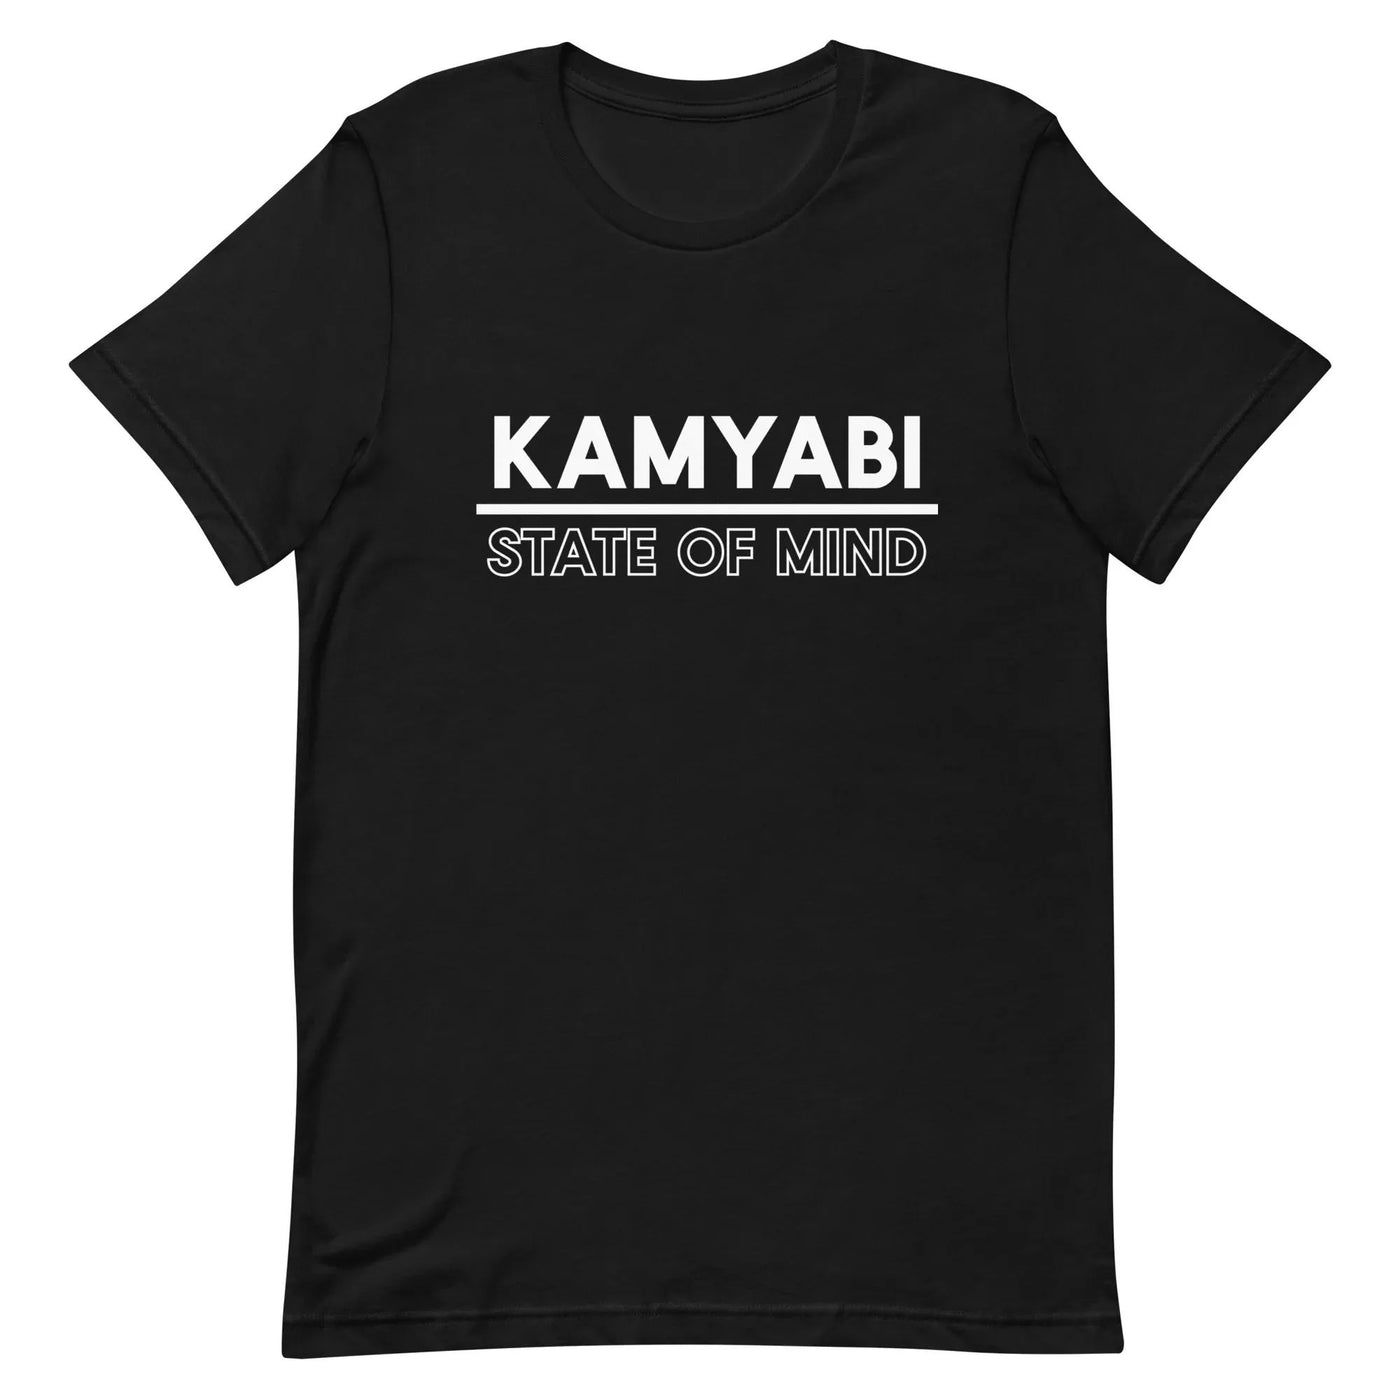 Kamyabi State of Mind t-shirt